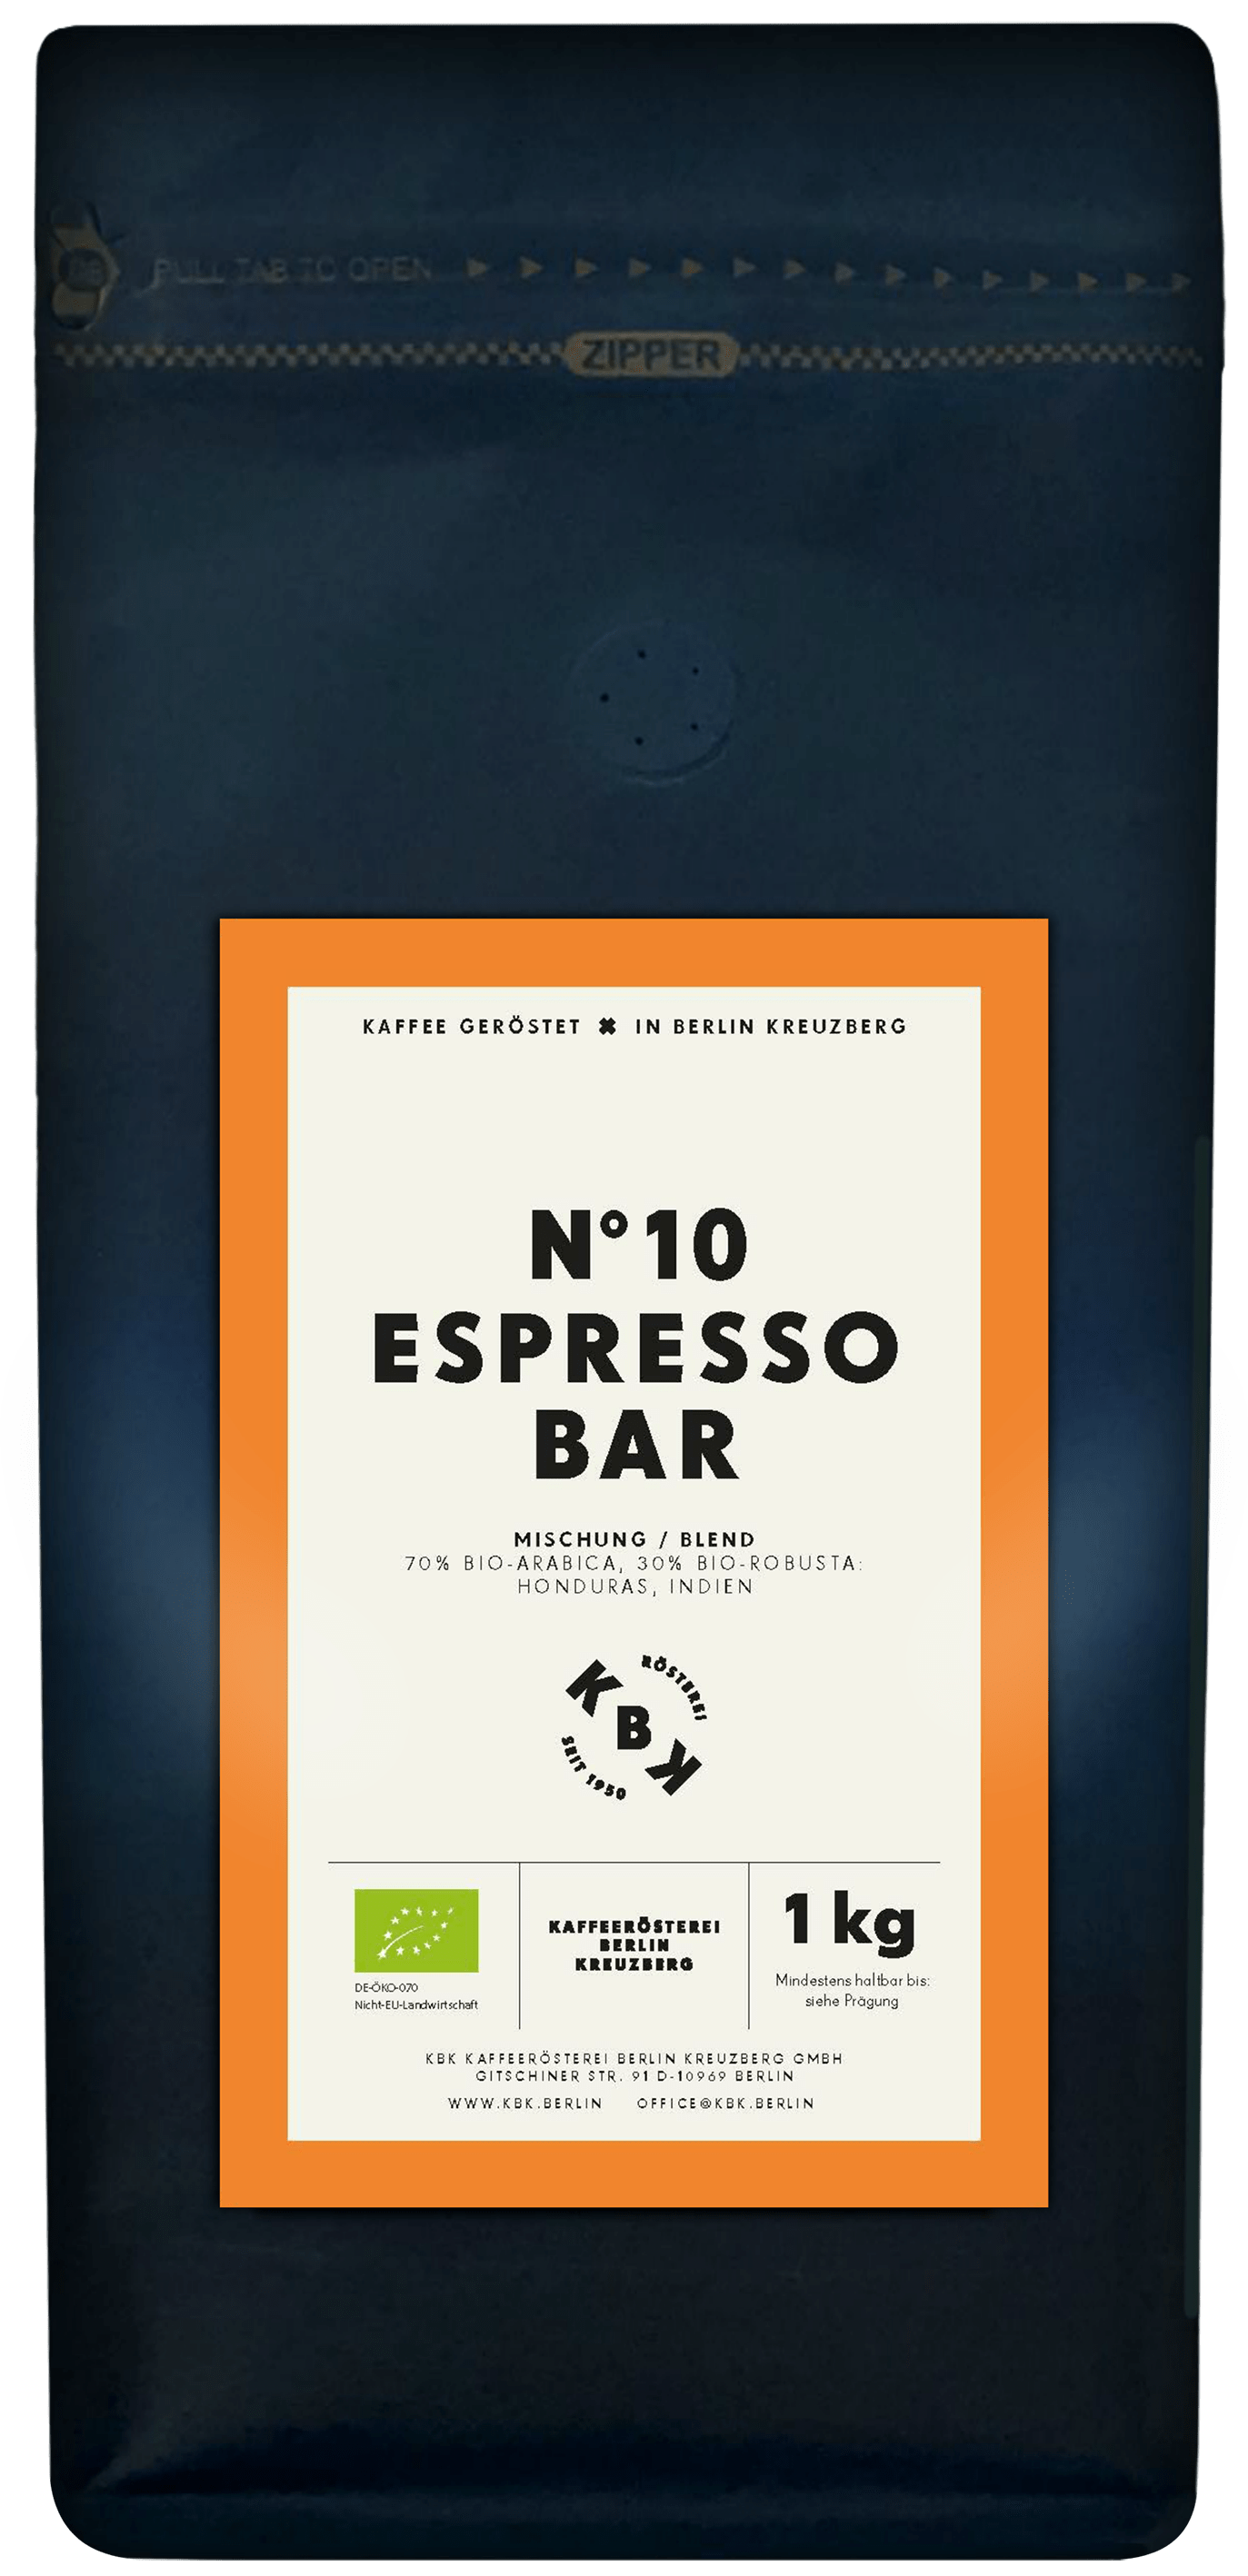 N°10 Espresso Bar